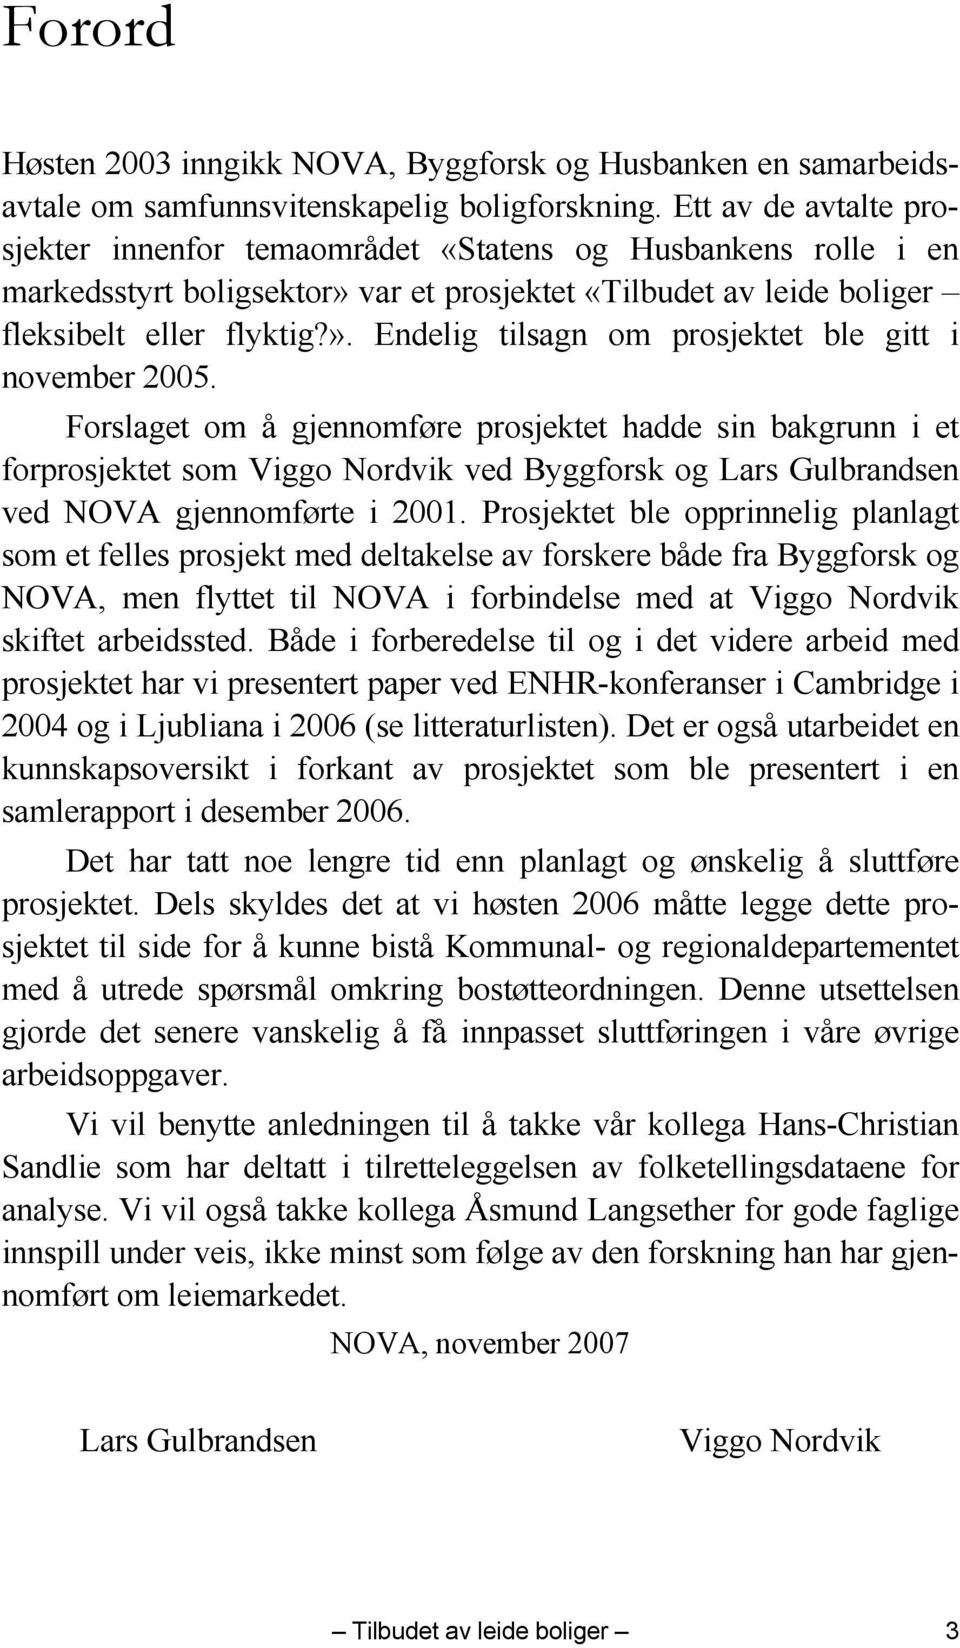 Forslaget om å gjennomføre prosjektet hadde sin bakgrunn i et forprosjektet som Viggo Nordvik ved Byggforsk og Lars Gulbrandsen ved NOVA gjennomførte i 2001.